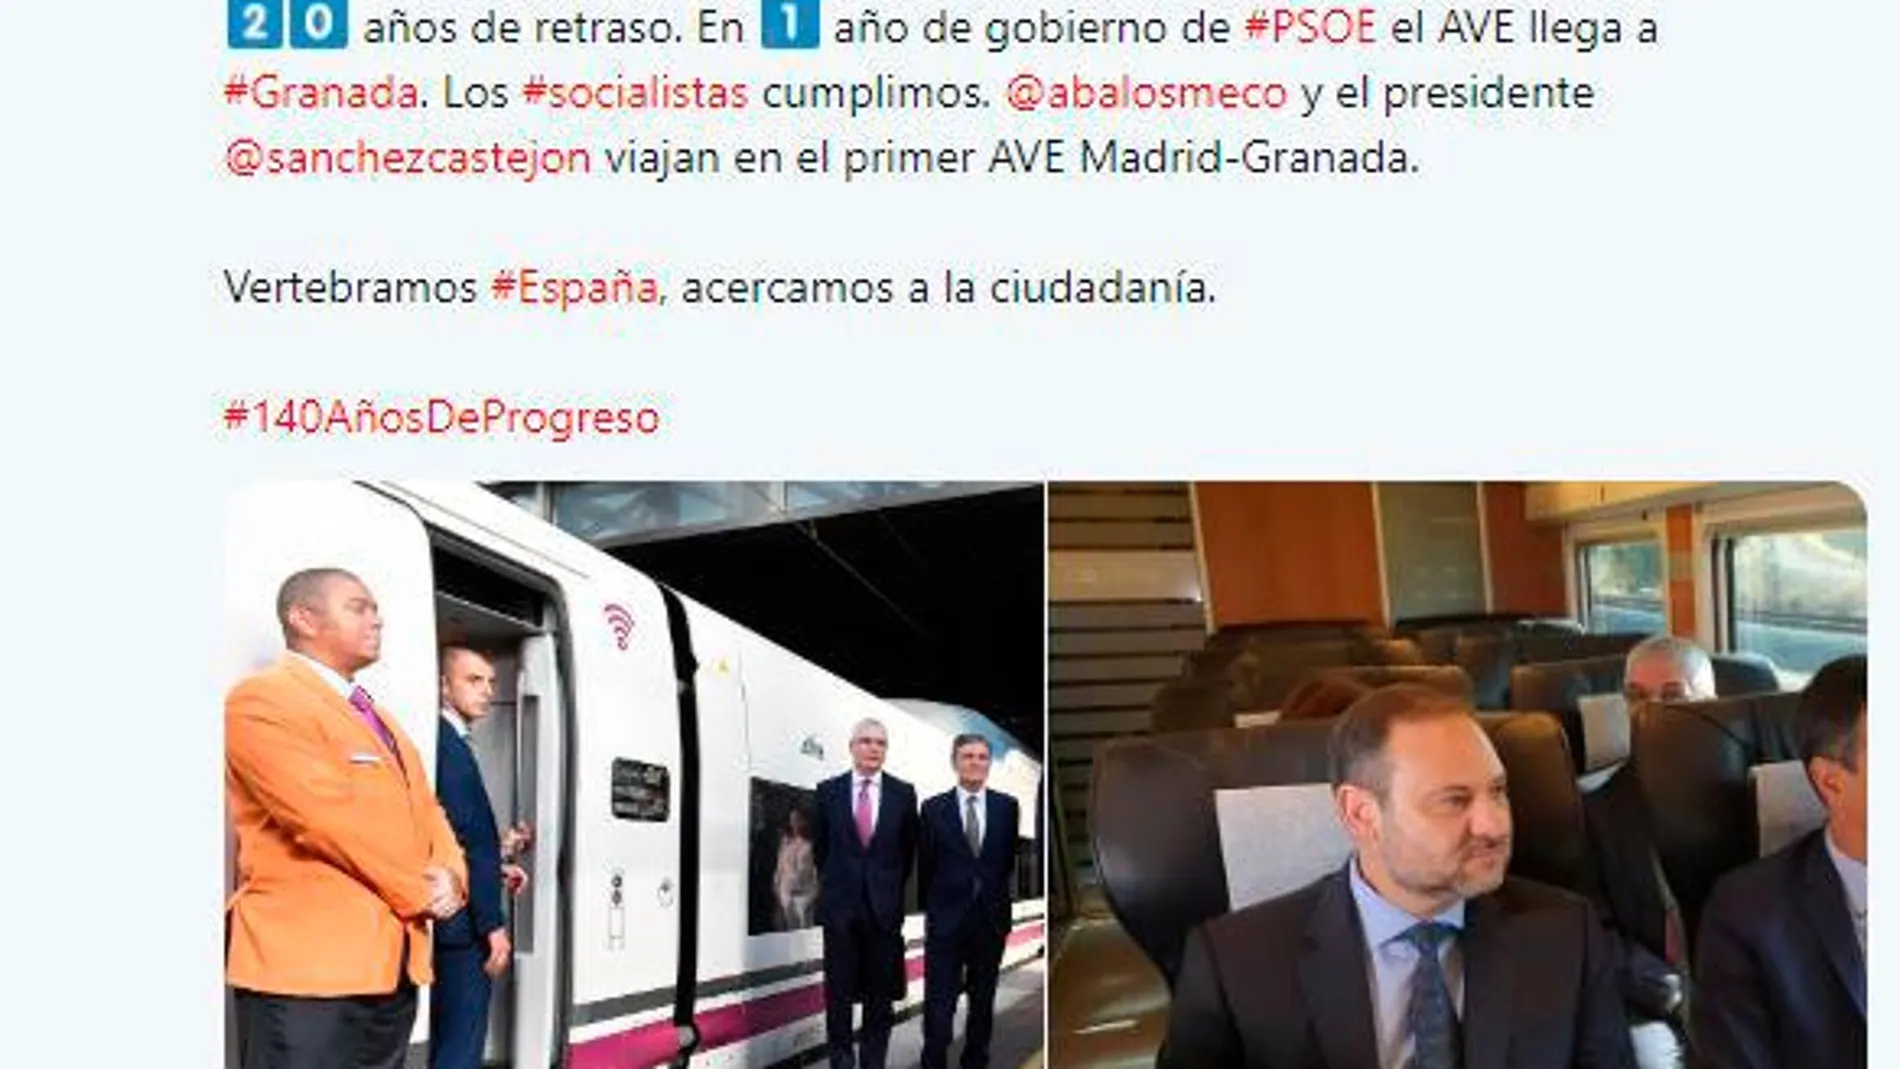 Tuit del PSOE presumiendo de haber hecho el AVE a Granada en un año / Twitter